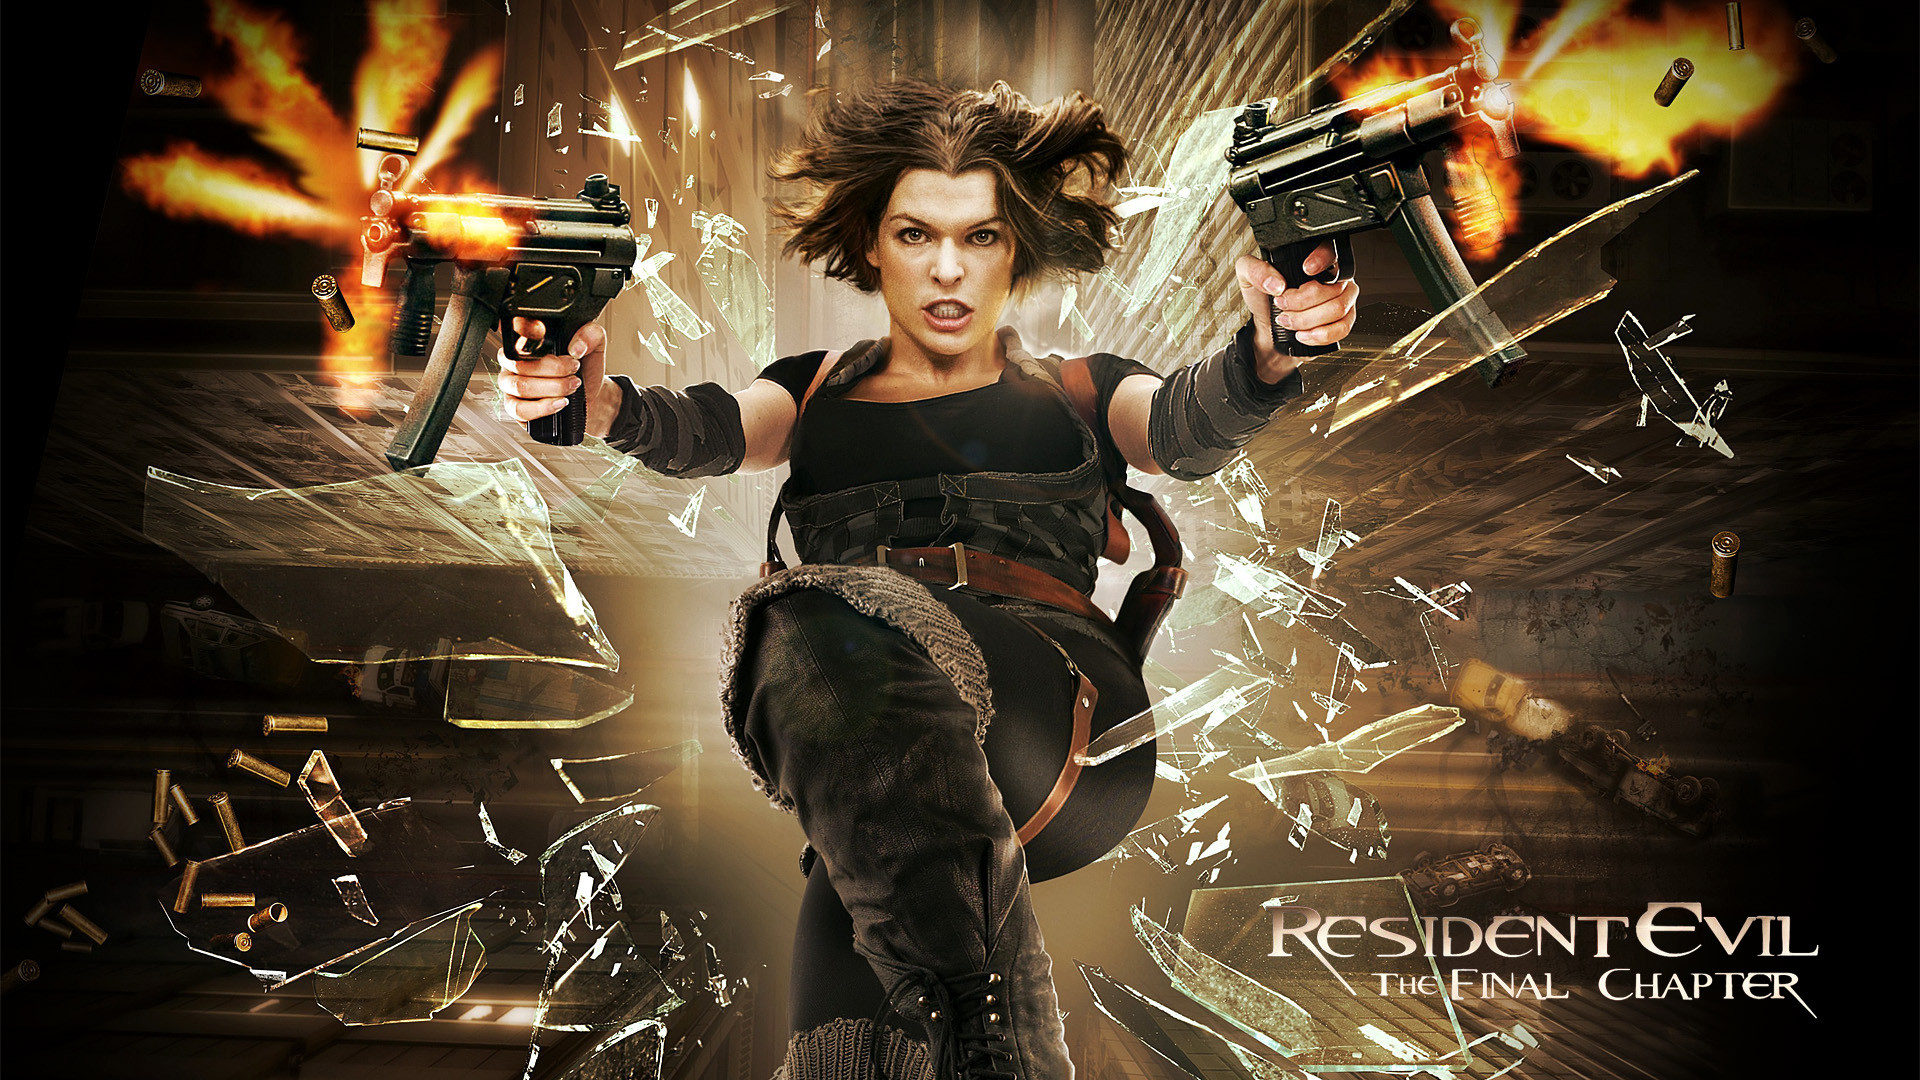 1920x1080 Resident Evil 6 wallpaper HD film poster 2017